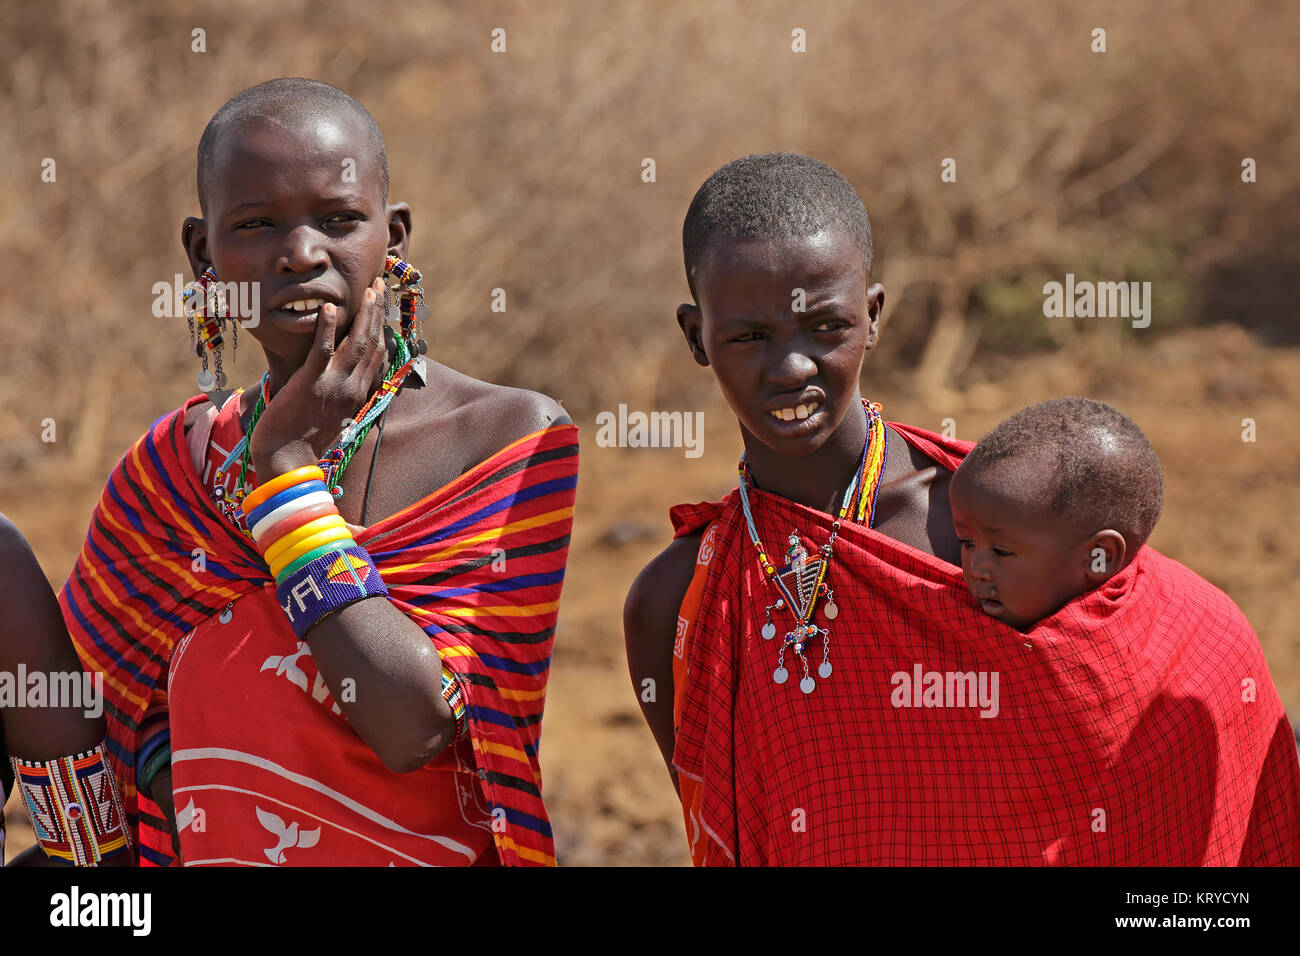 AMBOSELI, KENYA - Agosto 31, 2013: Ritratto di unidentified Masai donne e bambini con tradizionali decorazioni colorate e indumenti di colore rosso. Foto Stock